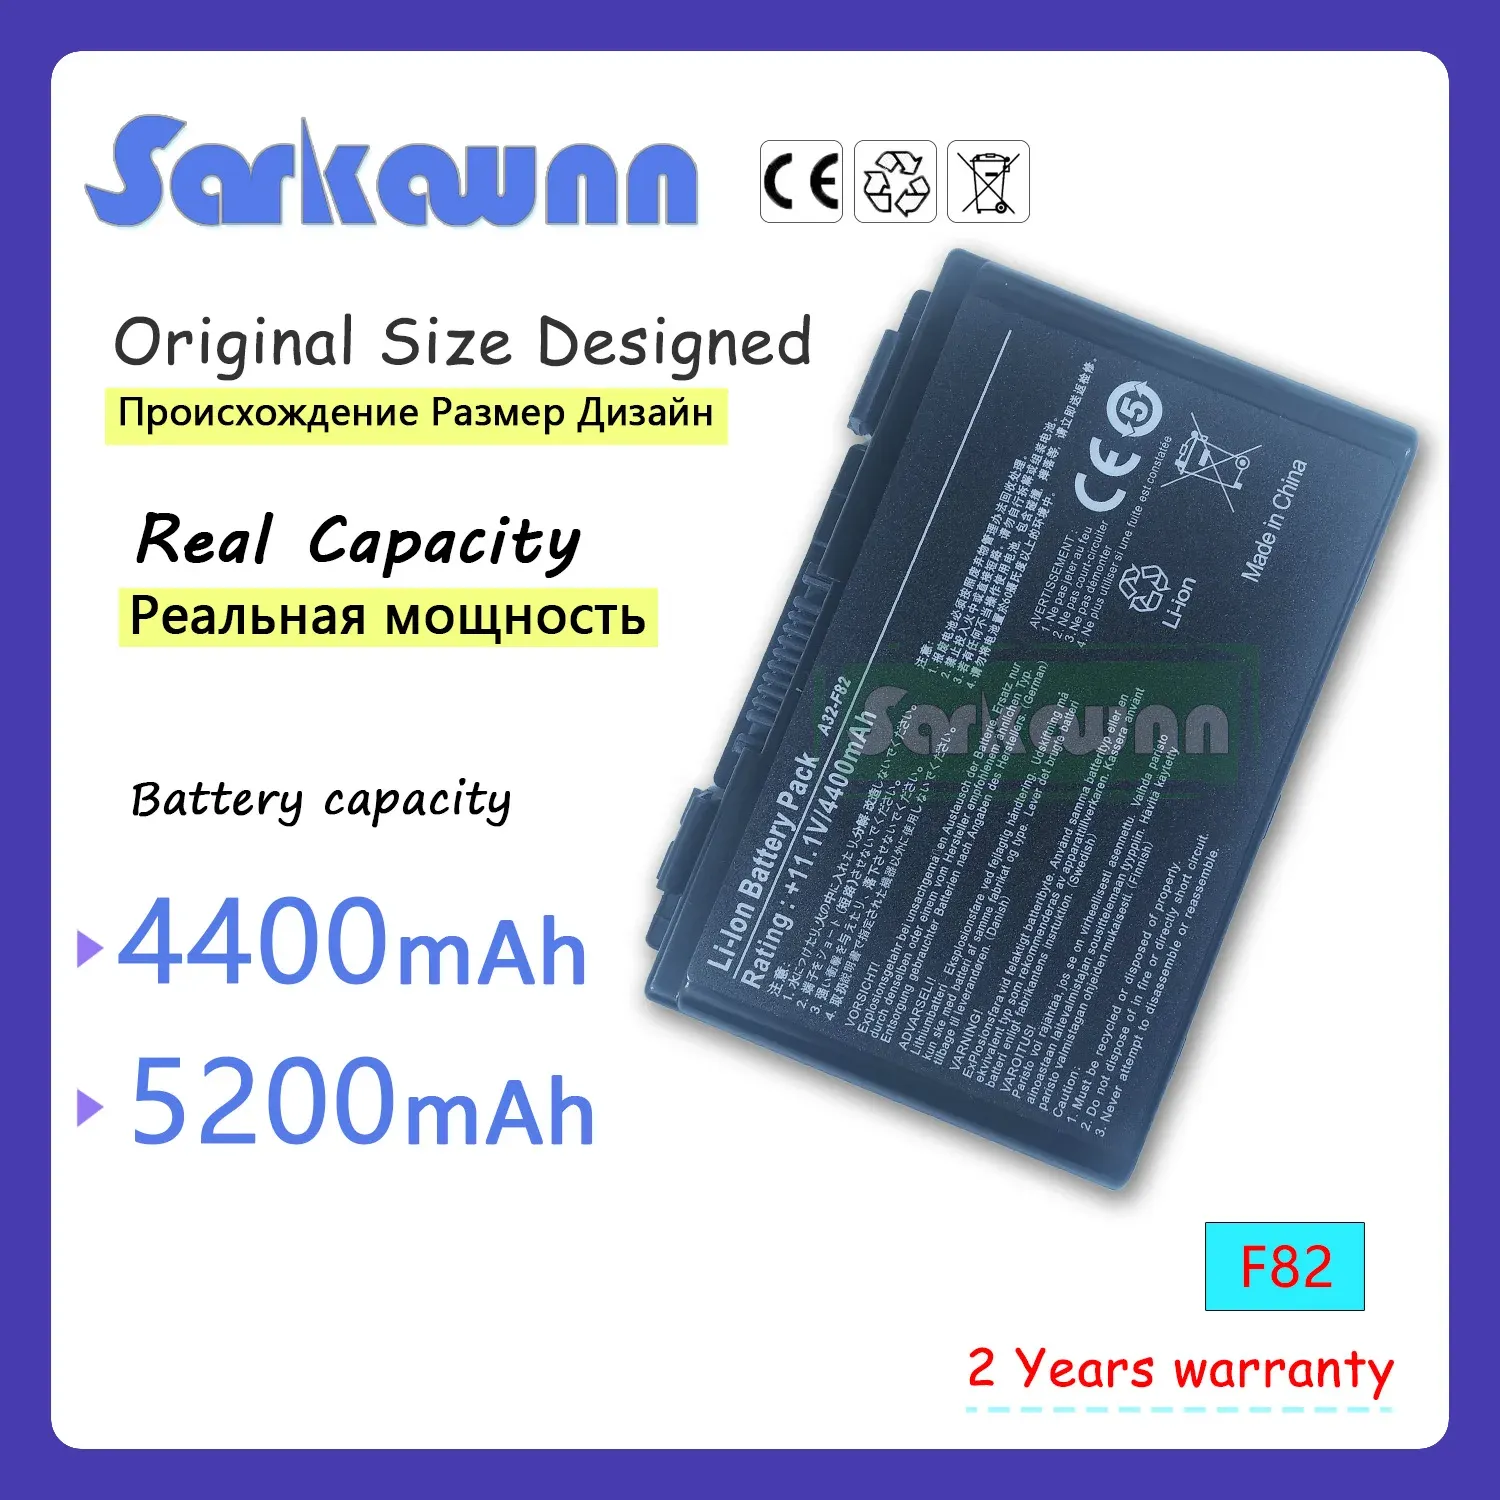 Batterien Sarkawnn 6zells F82 90NVD1B1000Y Laptop Batterie für ASUS F52 F82 F83S K40 K40E K40IJ K50 IN K50 K51 K50ABX2A K50IJ K50IN